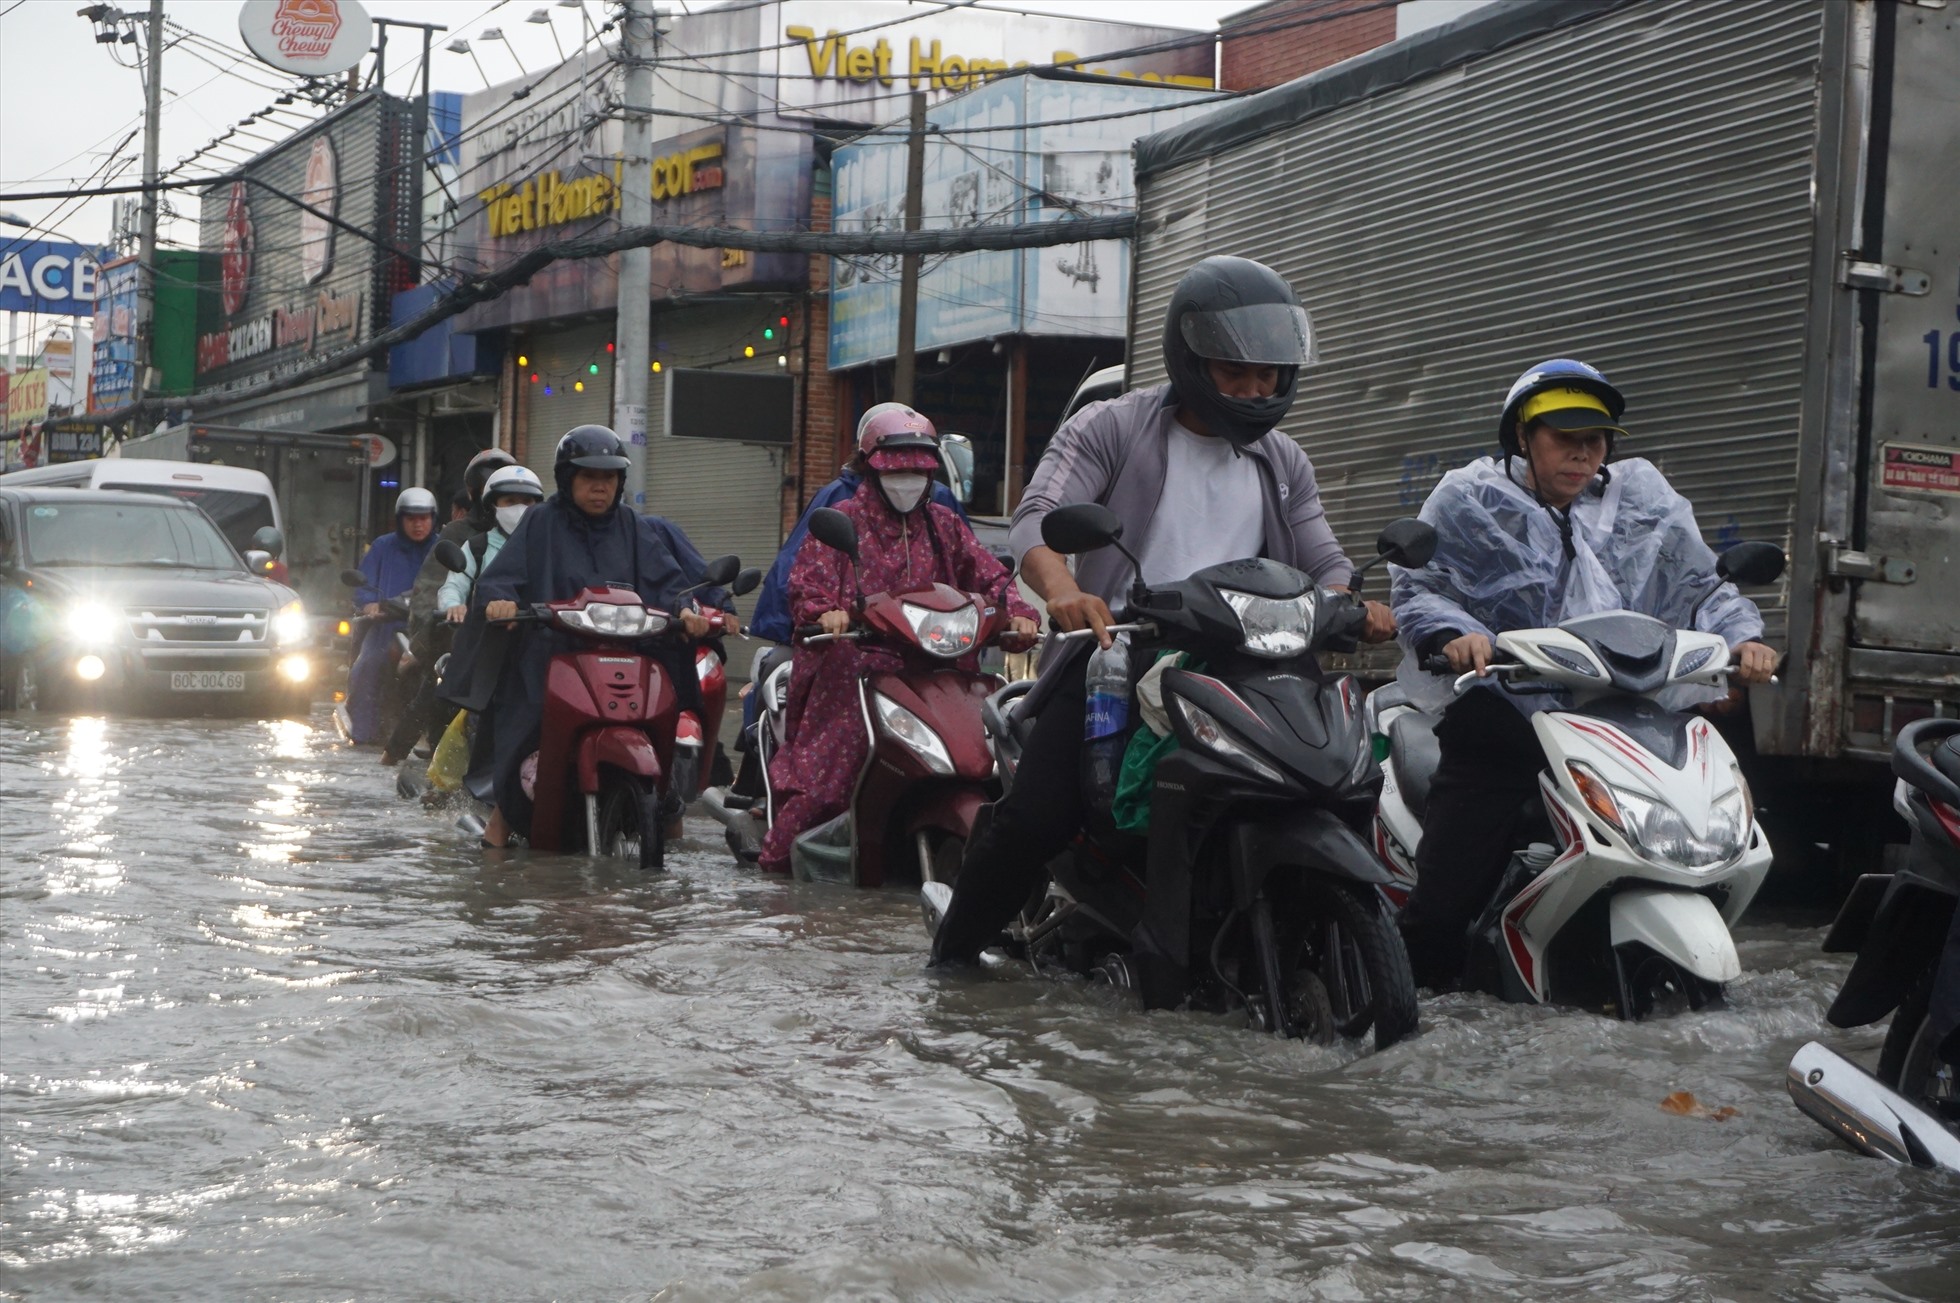 Tại đường Tô Ngọc Vân giao đường Linh Đông, nước ngập 30 cm khiến hàng loạt xe máy chao đảo, nhiều người phải tấp xe vào vỉa hè chờ nước rút. “Hơn chục năm nay, con đường này cứ mưa là ngập” – anh Bình, người dân trong khu vực nói.